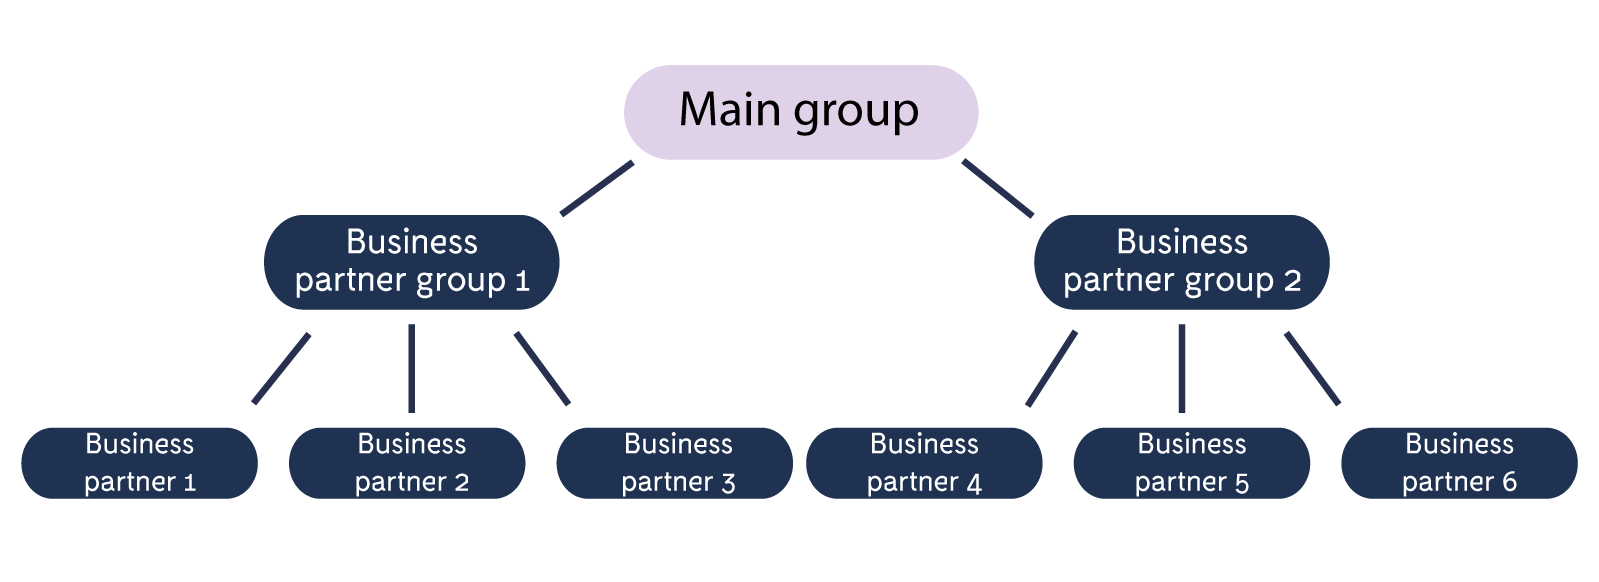 Main_Groups_Main_groups.png